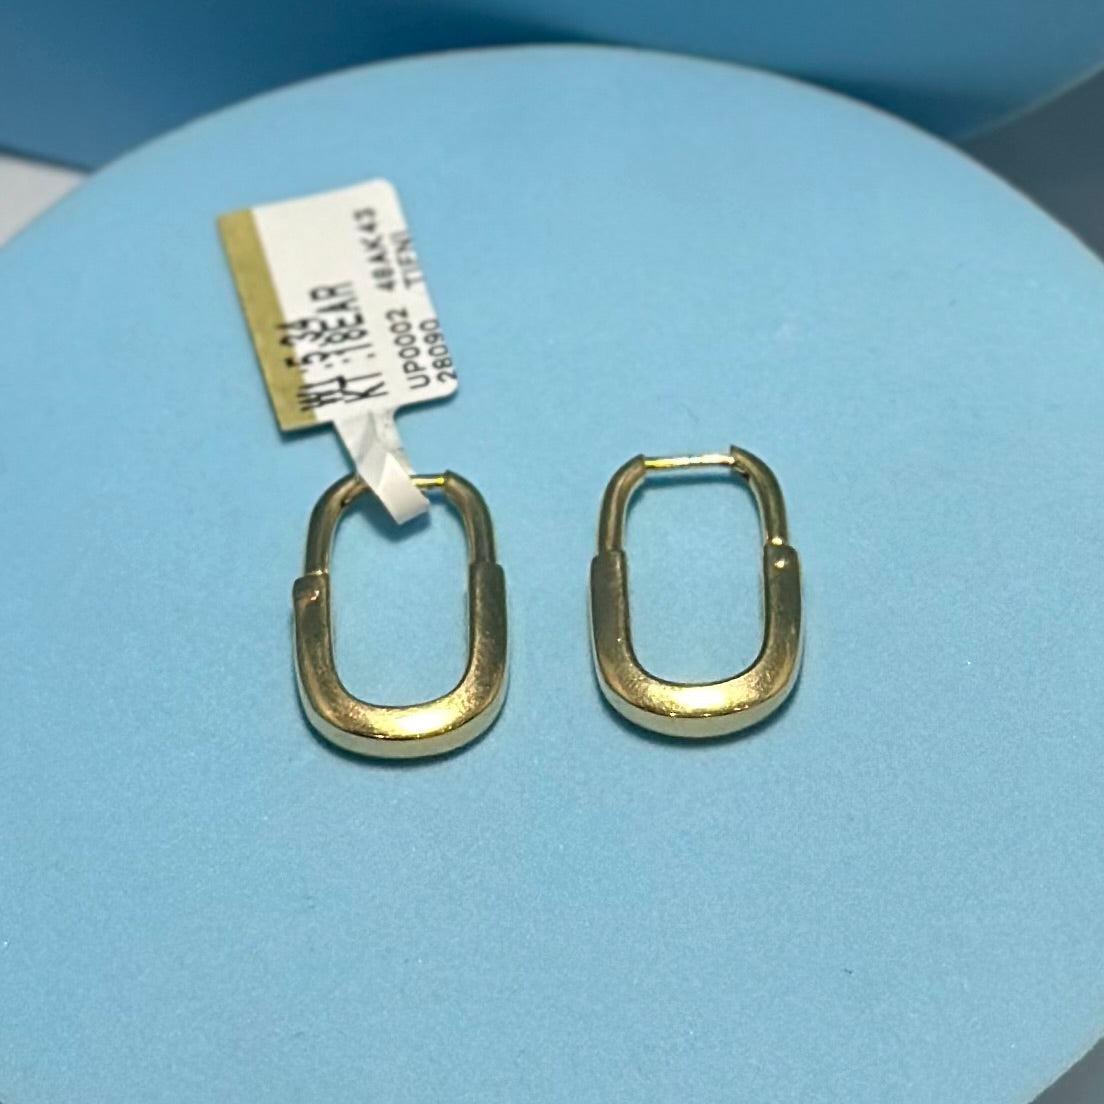 Real 18K Yellow Gold - SJTFNY Lock Earrings